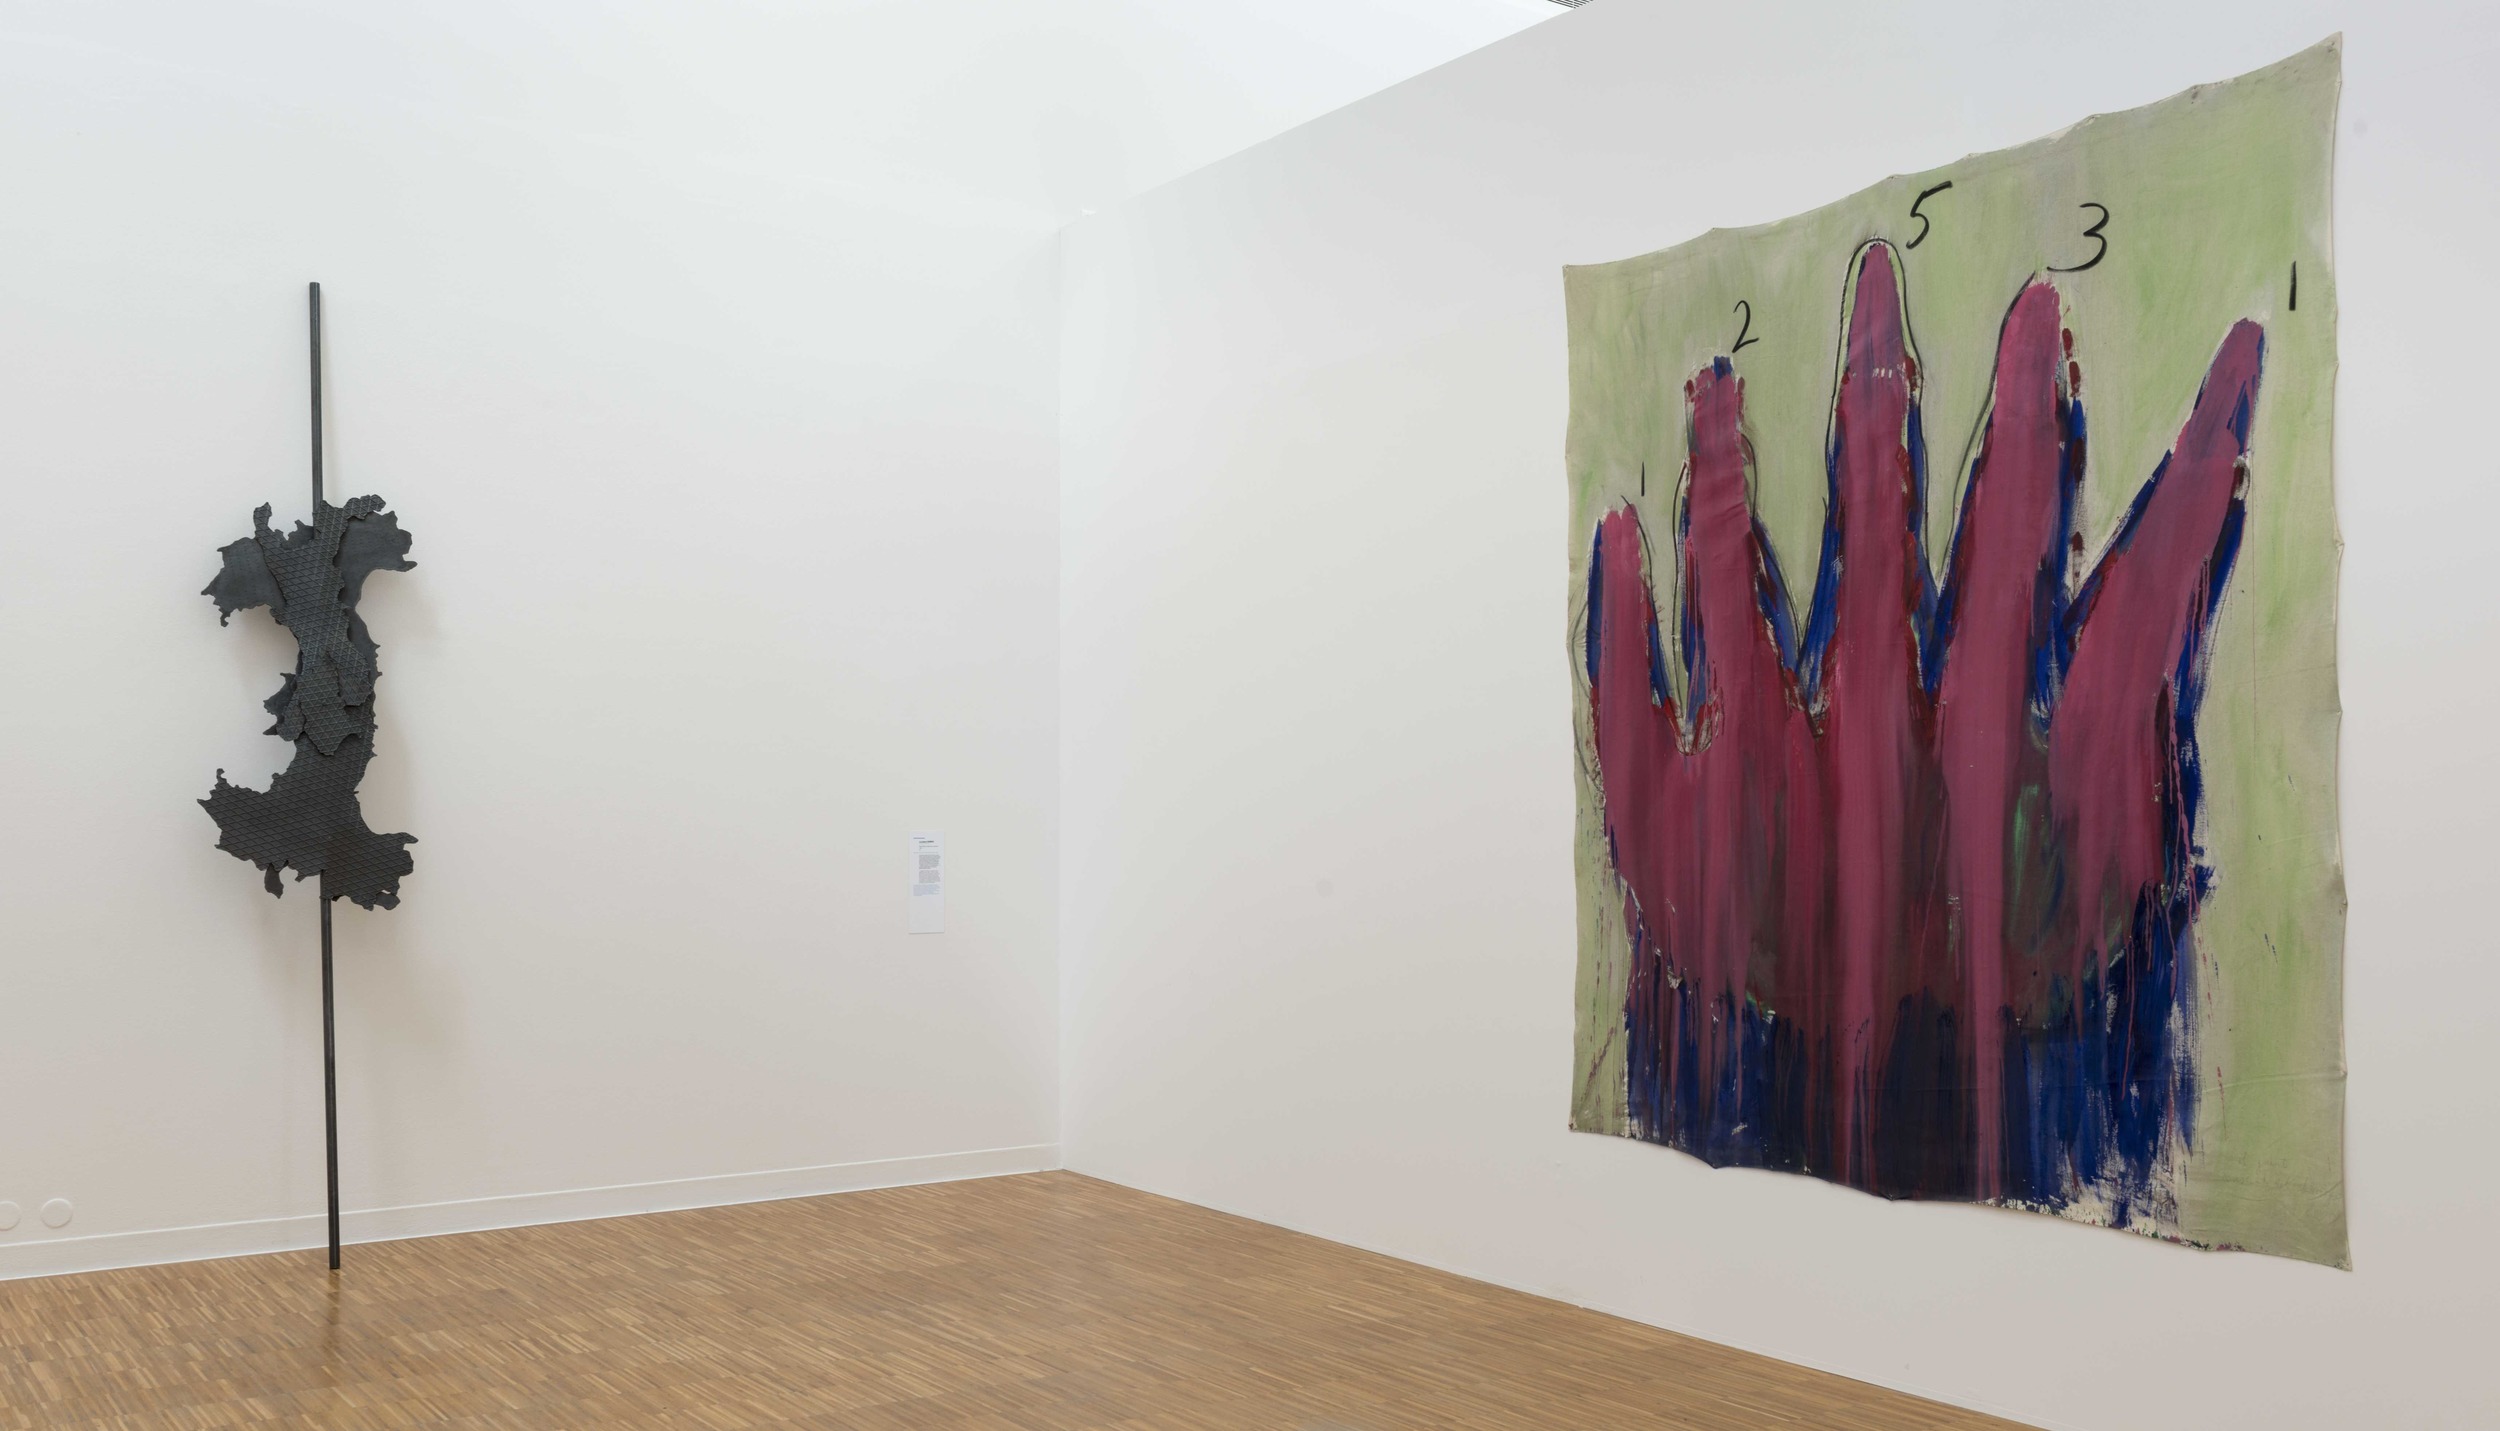   De Picasso à Warhol , Une Décennie d'Acquisitions, Musée de Grenoble (FR)&nbsp;2015. Curator Guy Tosatto.&nbsp;&nbsp;Artists in view: Mario Merz 